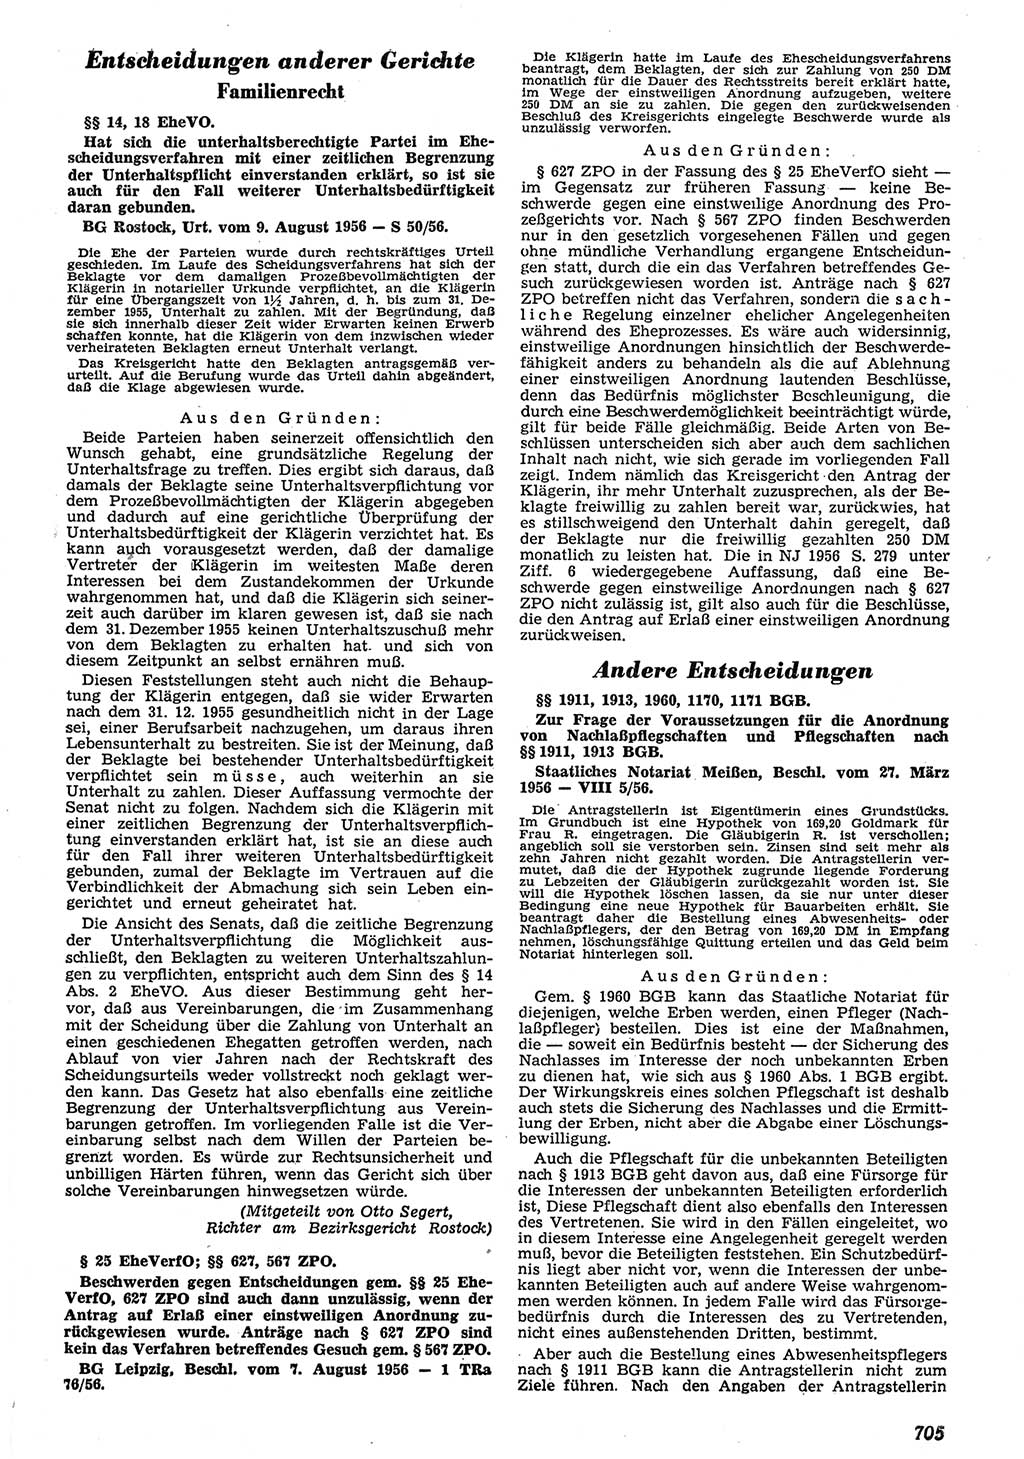 Neue Justiz (NJ), Zeitschrift für Recht und Rechtswissenschaft [Deutsche Demokratische Republik (DDR)], 10. Jahrgang 1956, Seite 705 (NJ DDR 1956, S. 705)